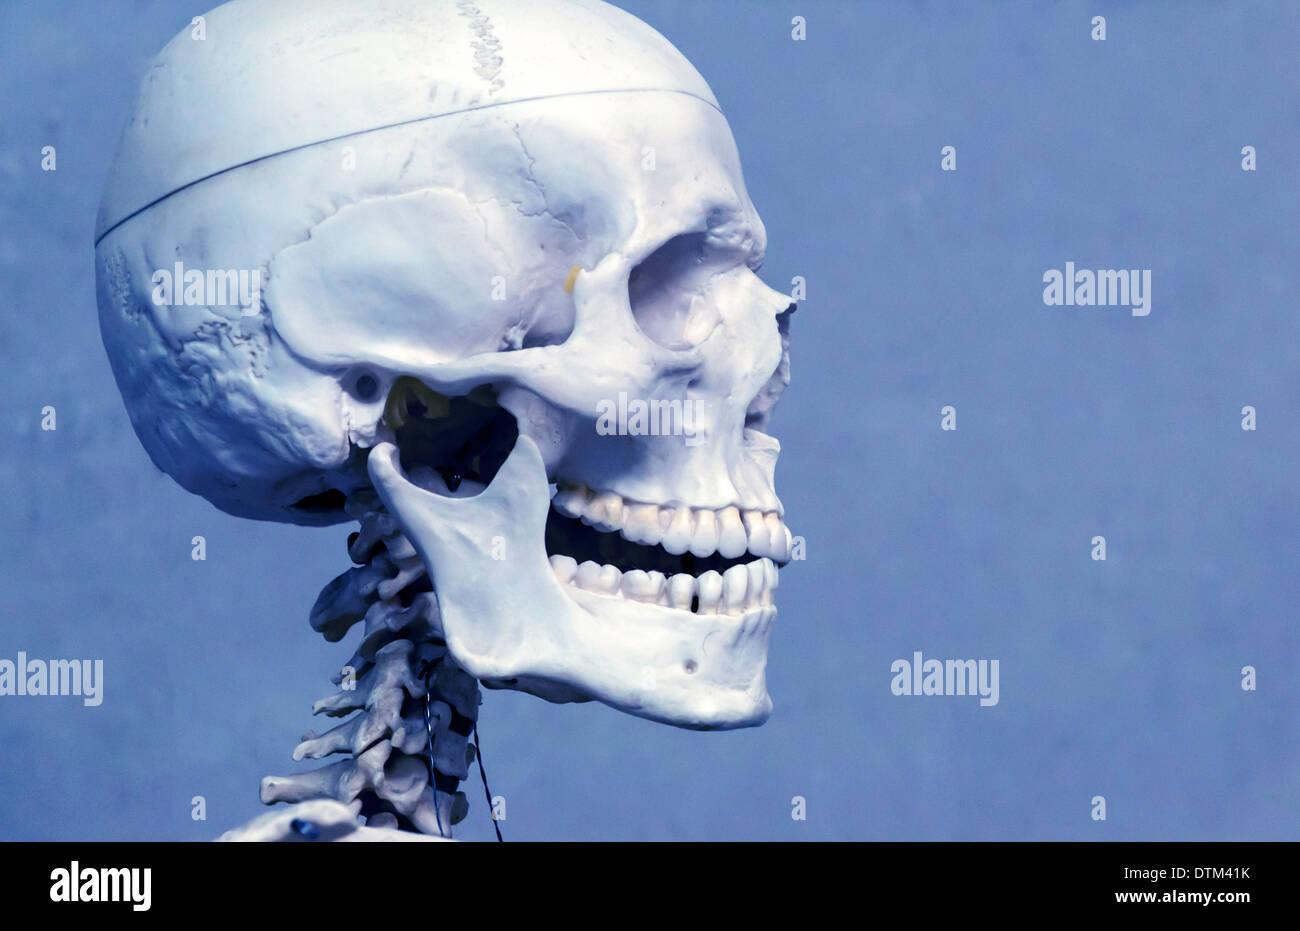 Scheletro umano e del cranio Foto Stock